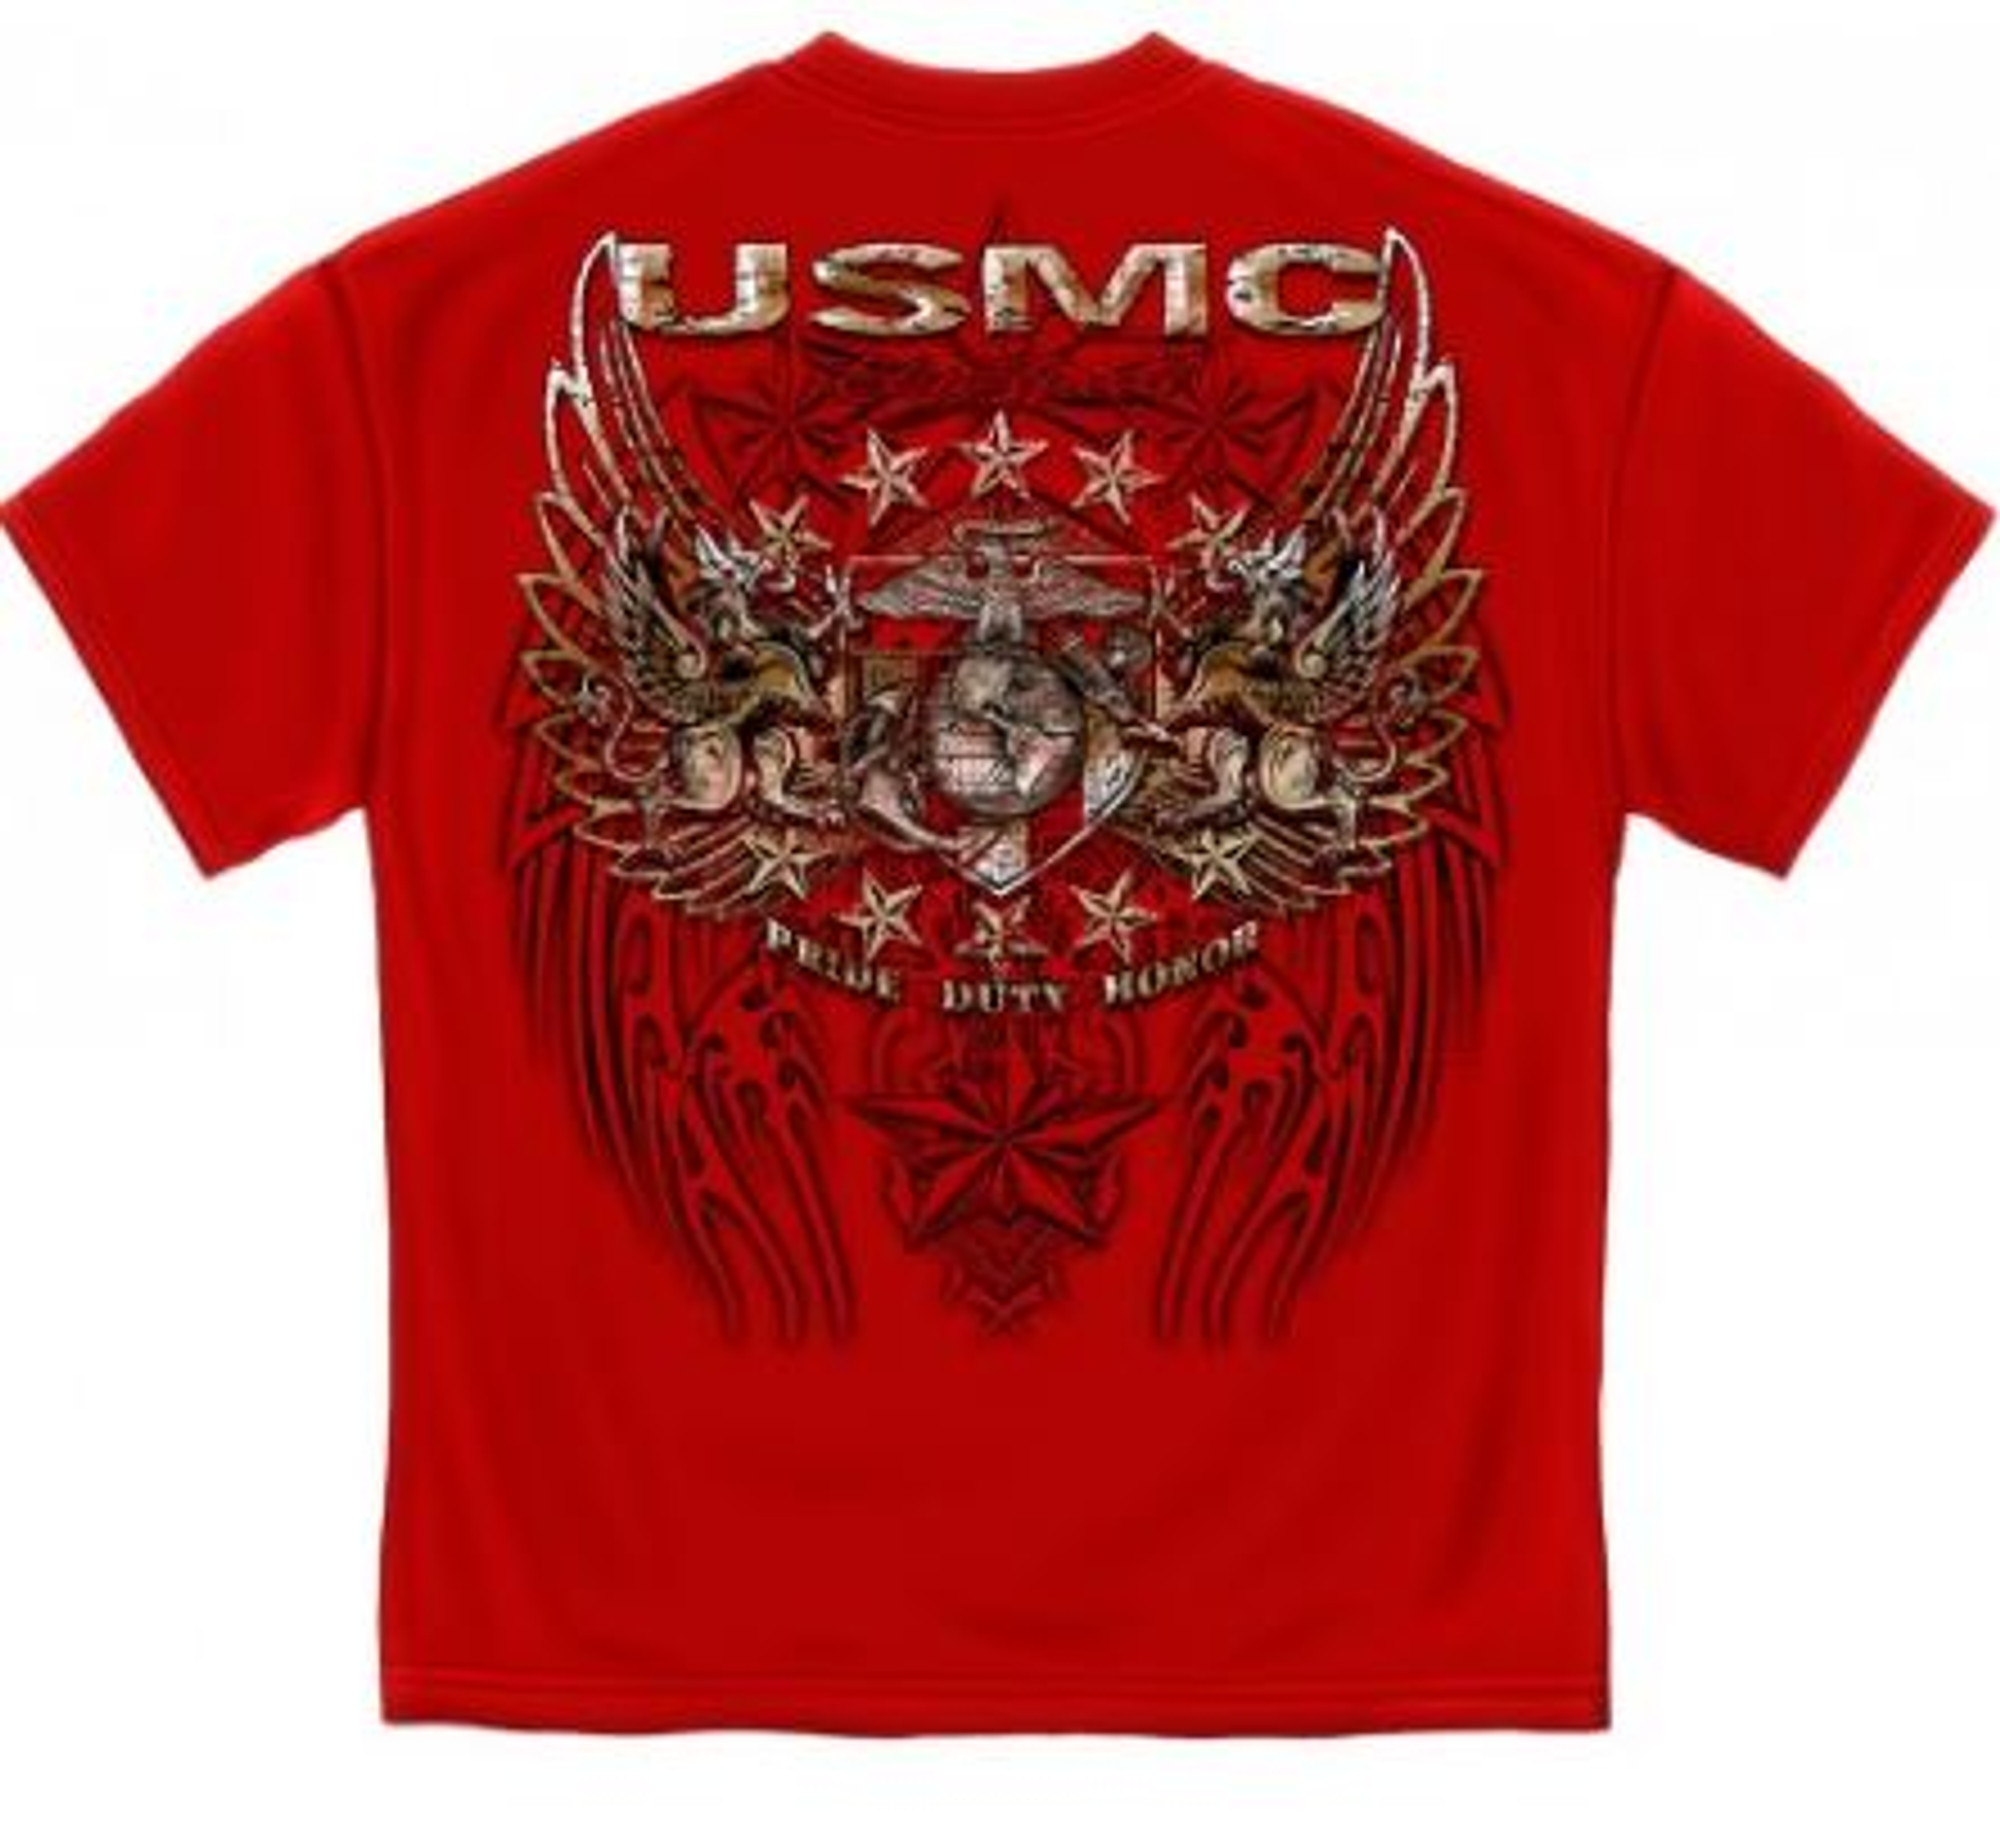 USMC "Pride Duty Honor" T-Shirt